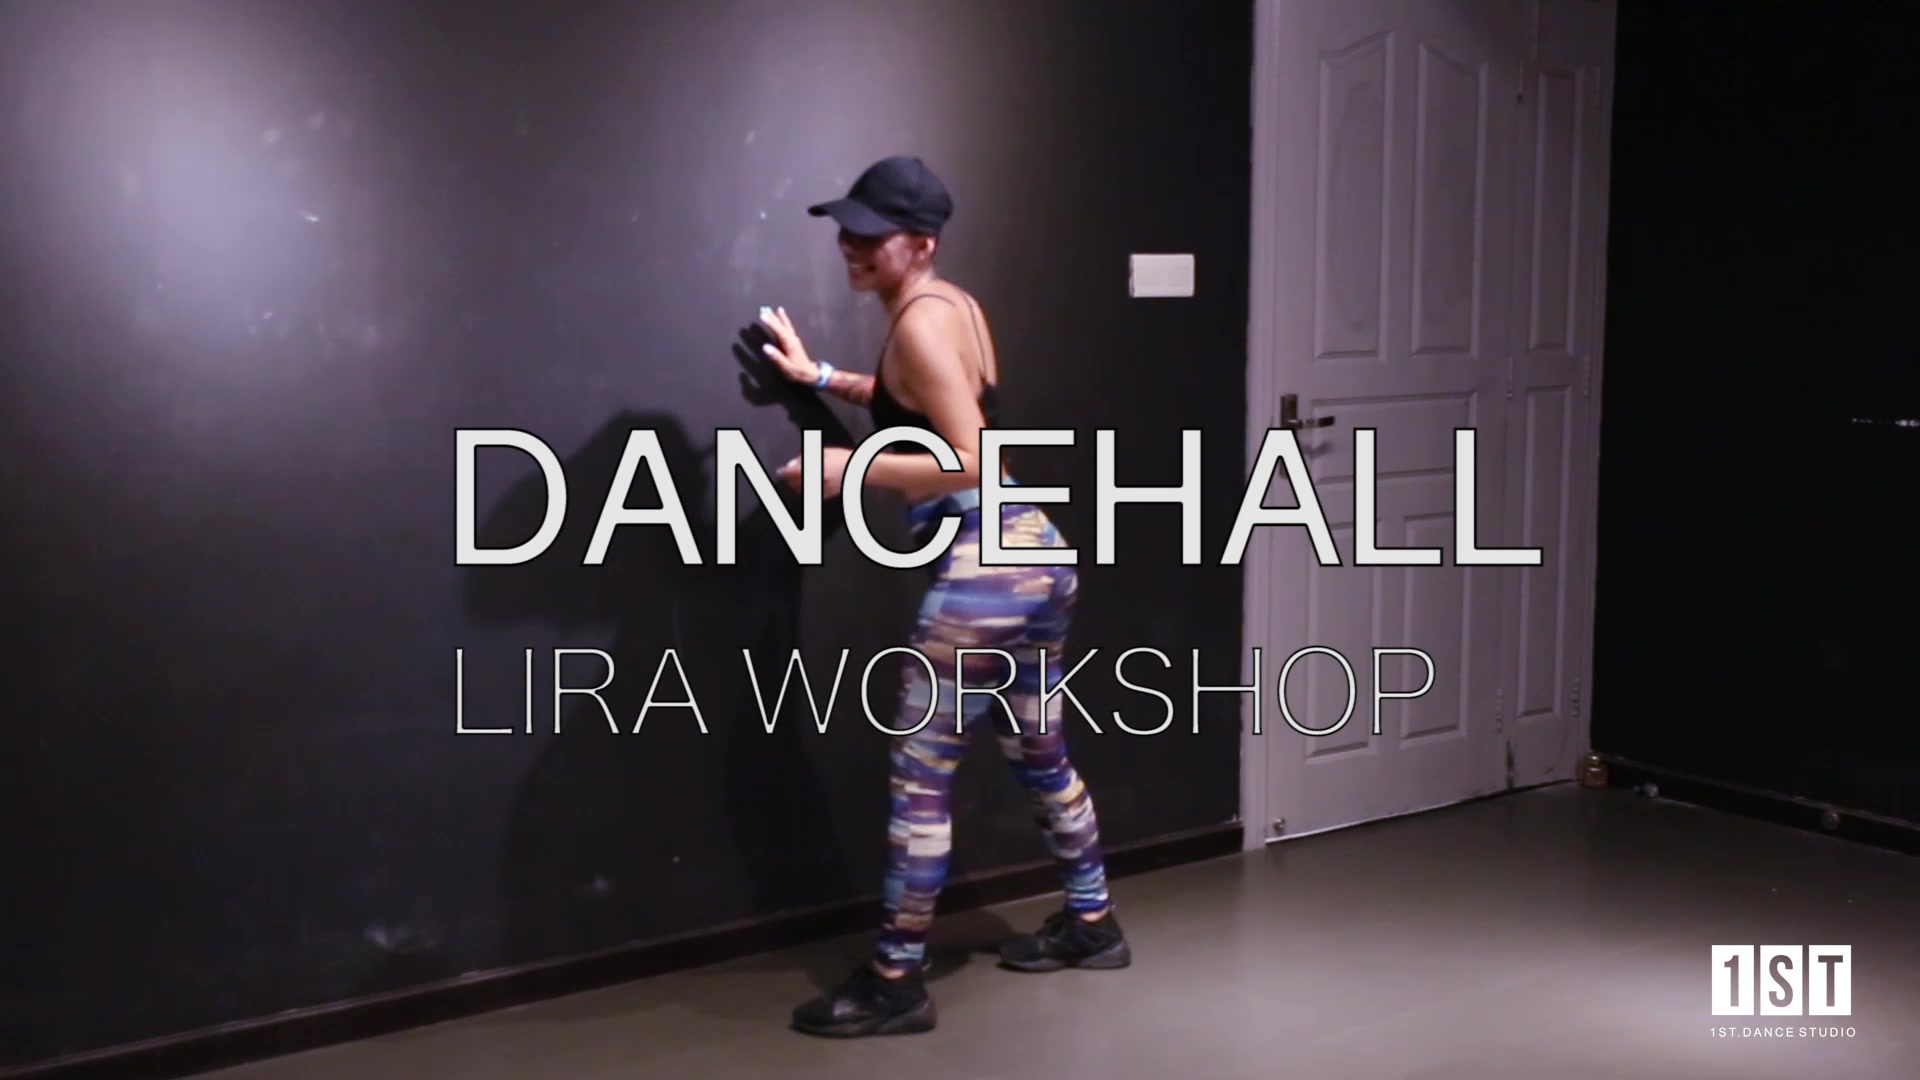 【武汉1ST舞蹈工作室】Dancehall是什么样的舞种？看这个视频就知道了Lira’s Dancehall Workshop 大师课授课片段1